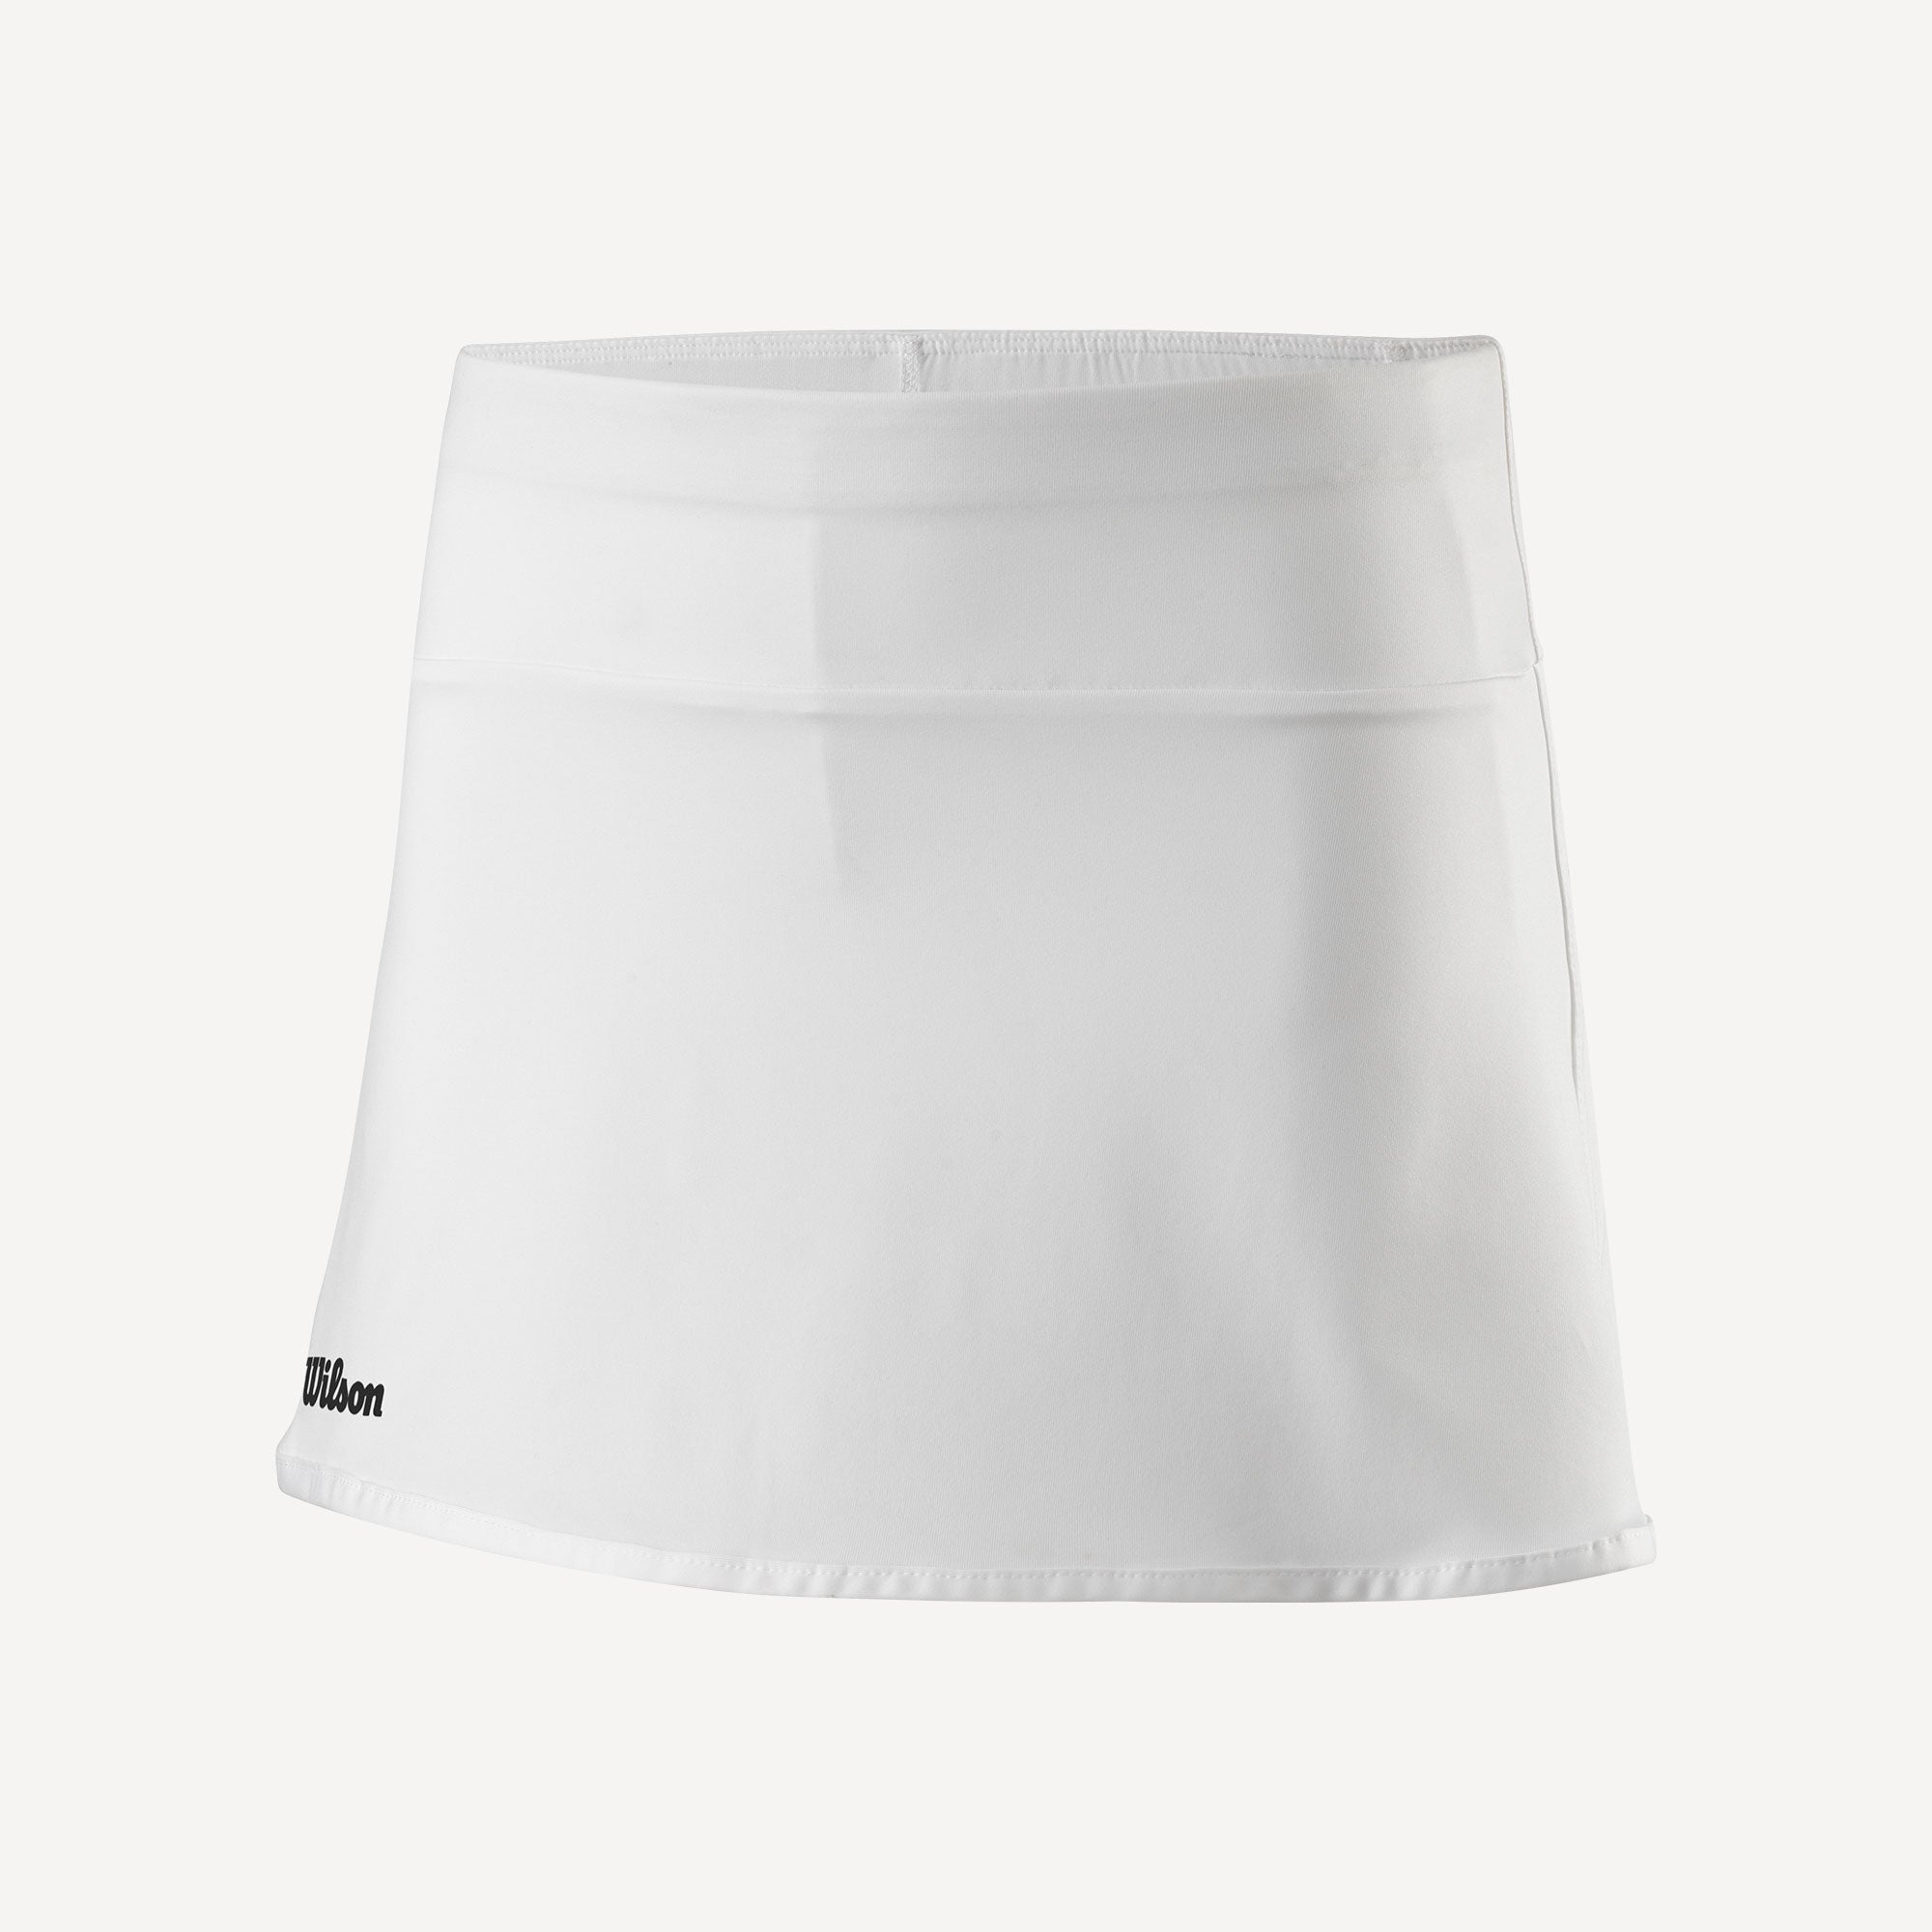 Wilson Team 2 Girls' 11-Inch Tennis Skirt White (1)